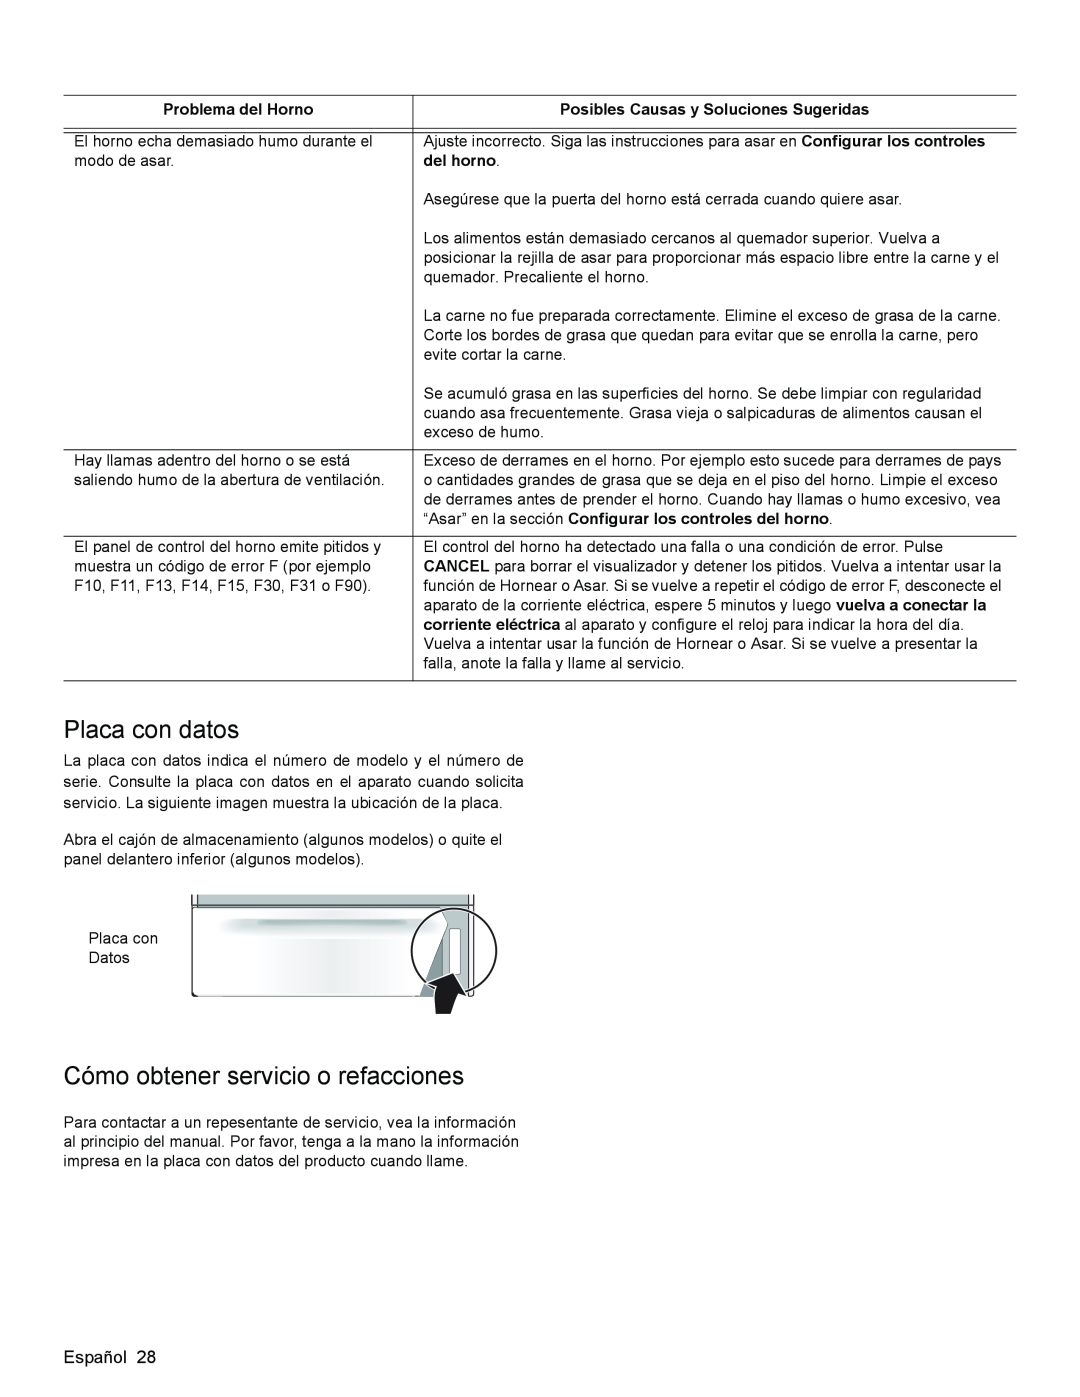 Bosch Appliances HGS3053UC manual Placa con datos, Cómo obtener servicio o refacciones, Problema del Horno, del horno 